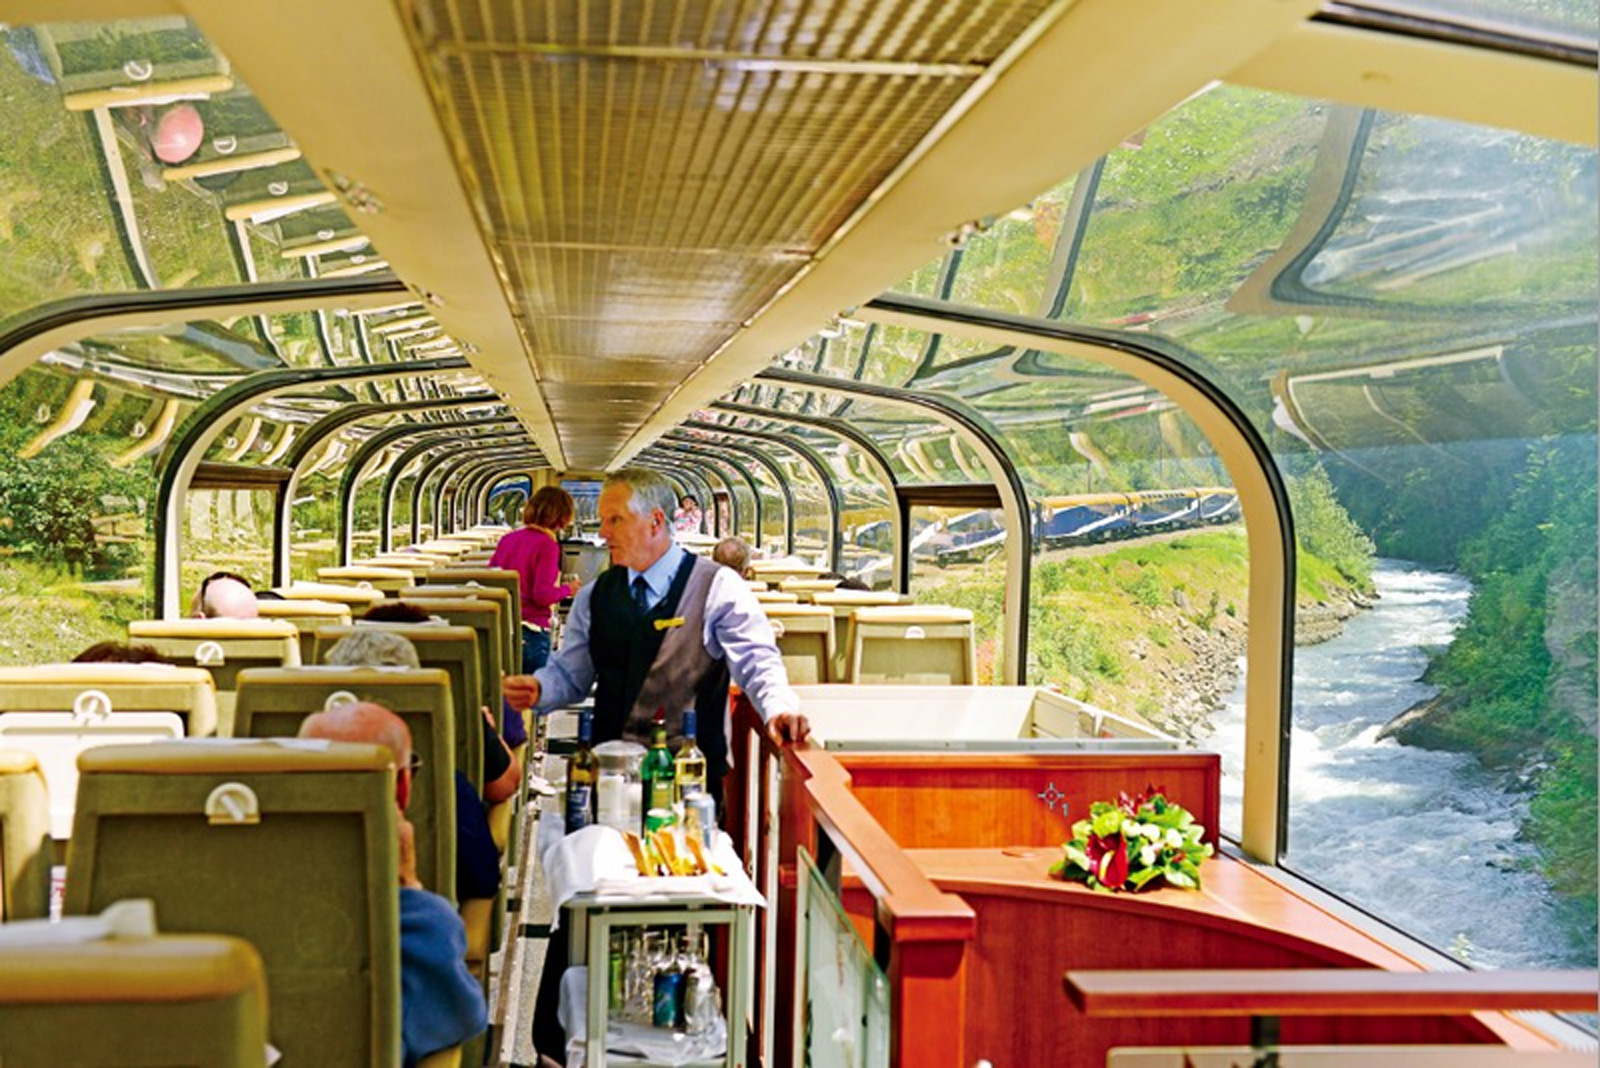 洛磯山登山者號（Rocky Mountaineer）觀景火車擁有全景式玻璃車頂及車廂末端的開放式連廊，沿途的美景就能盡收眼底。（圖片來源／《孤獨星球》國際中文版）